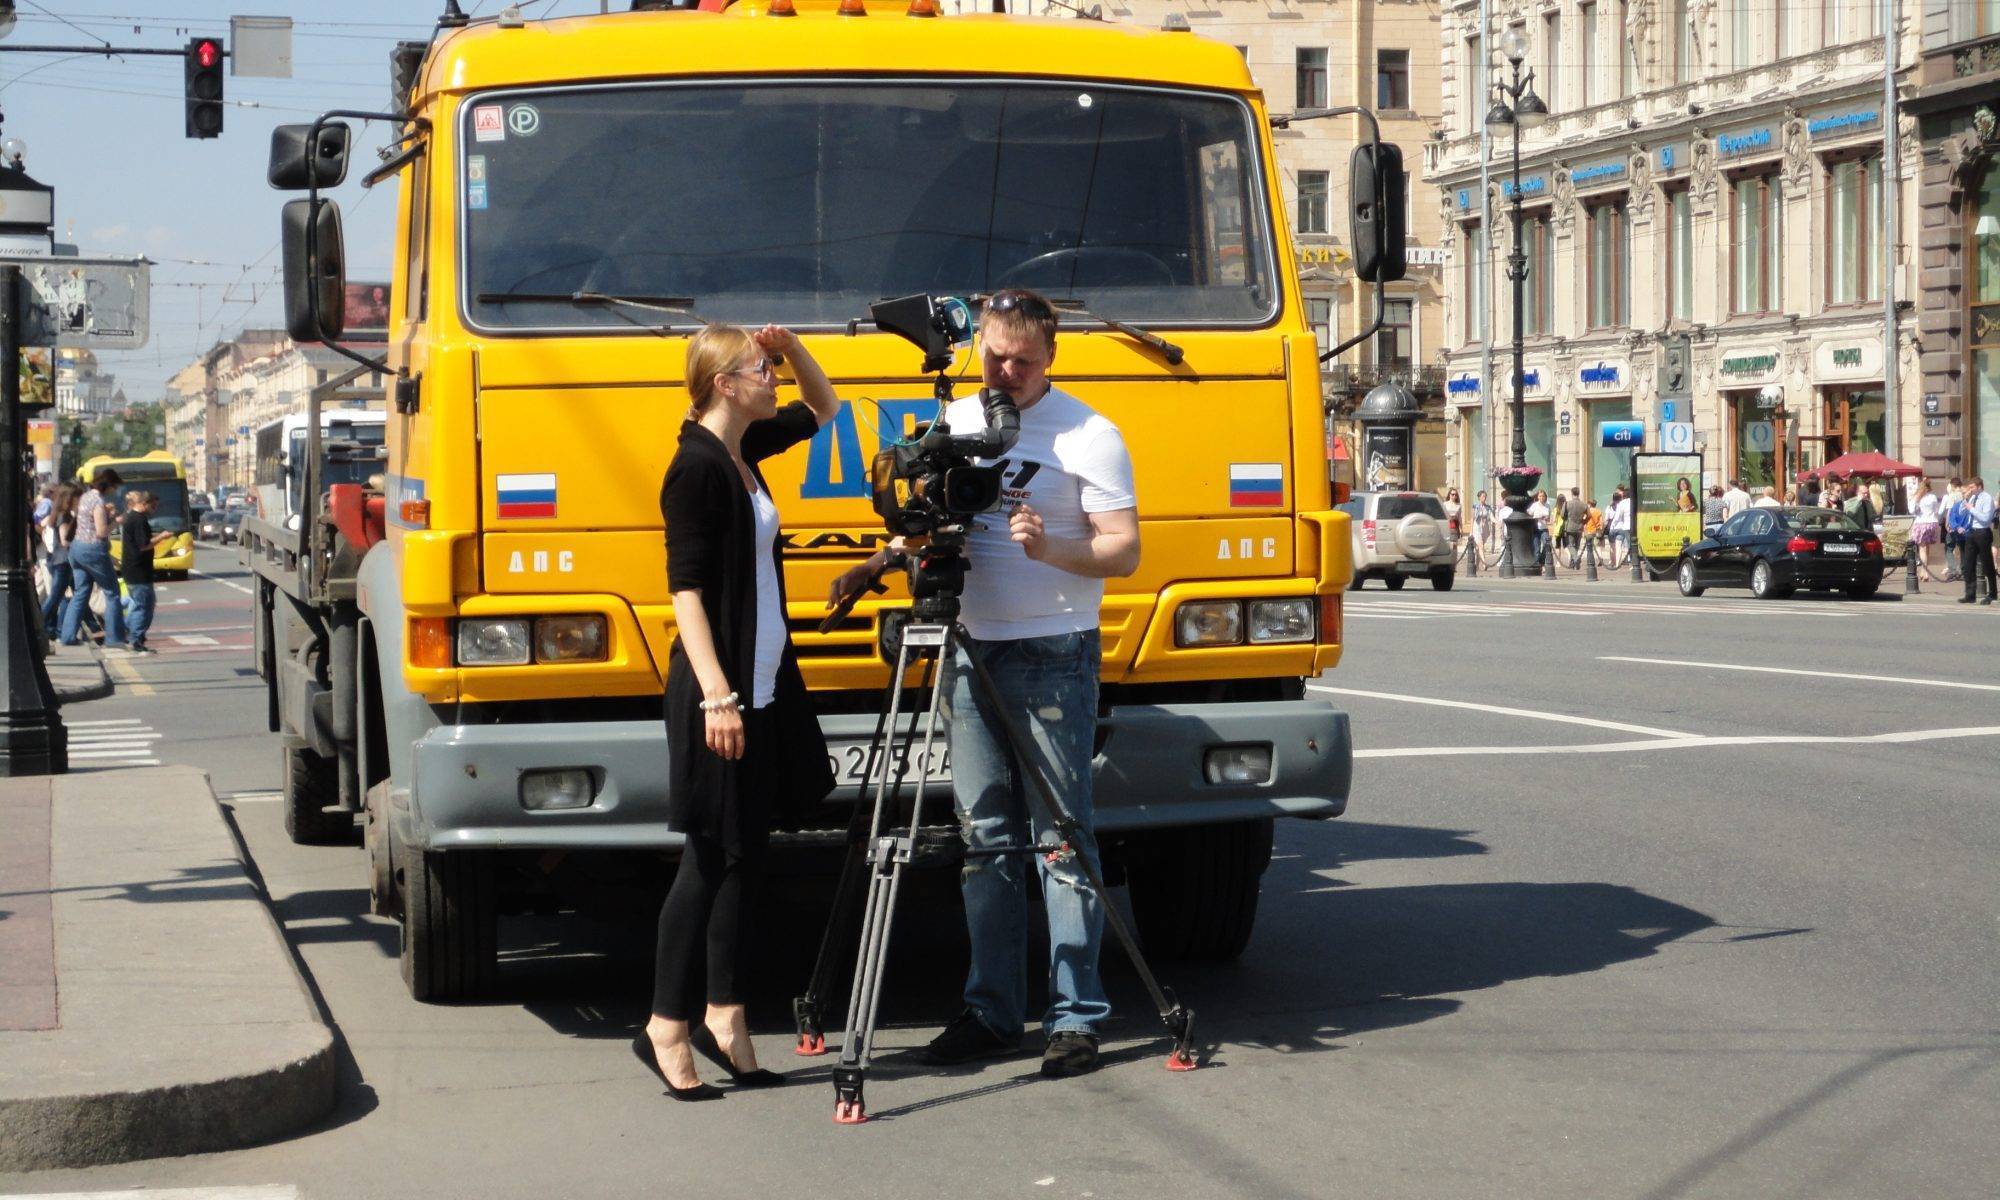 Filming in St. Petersburg, Russia